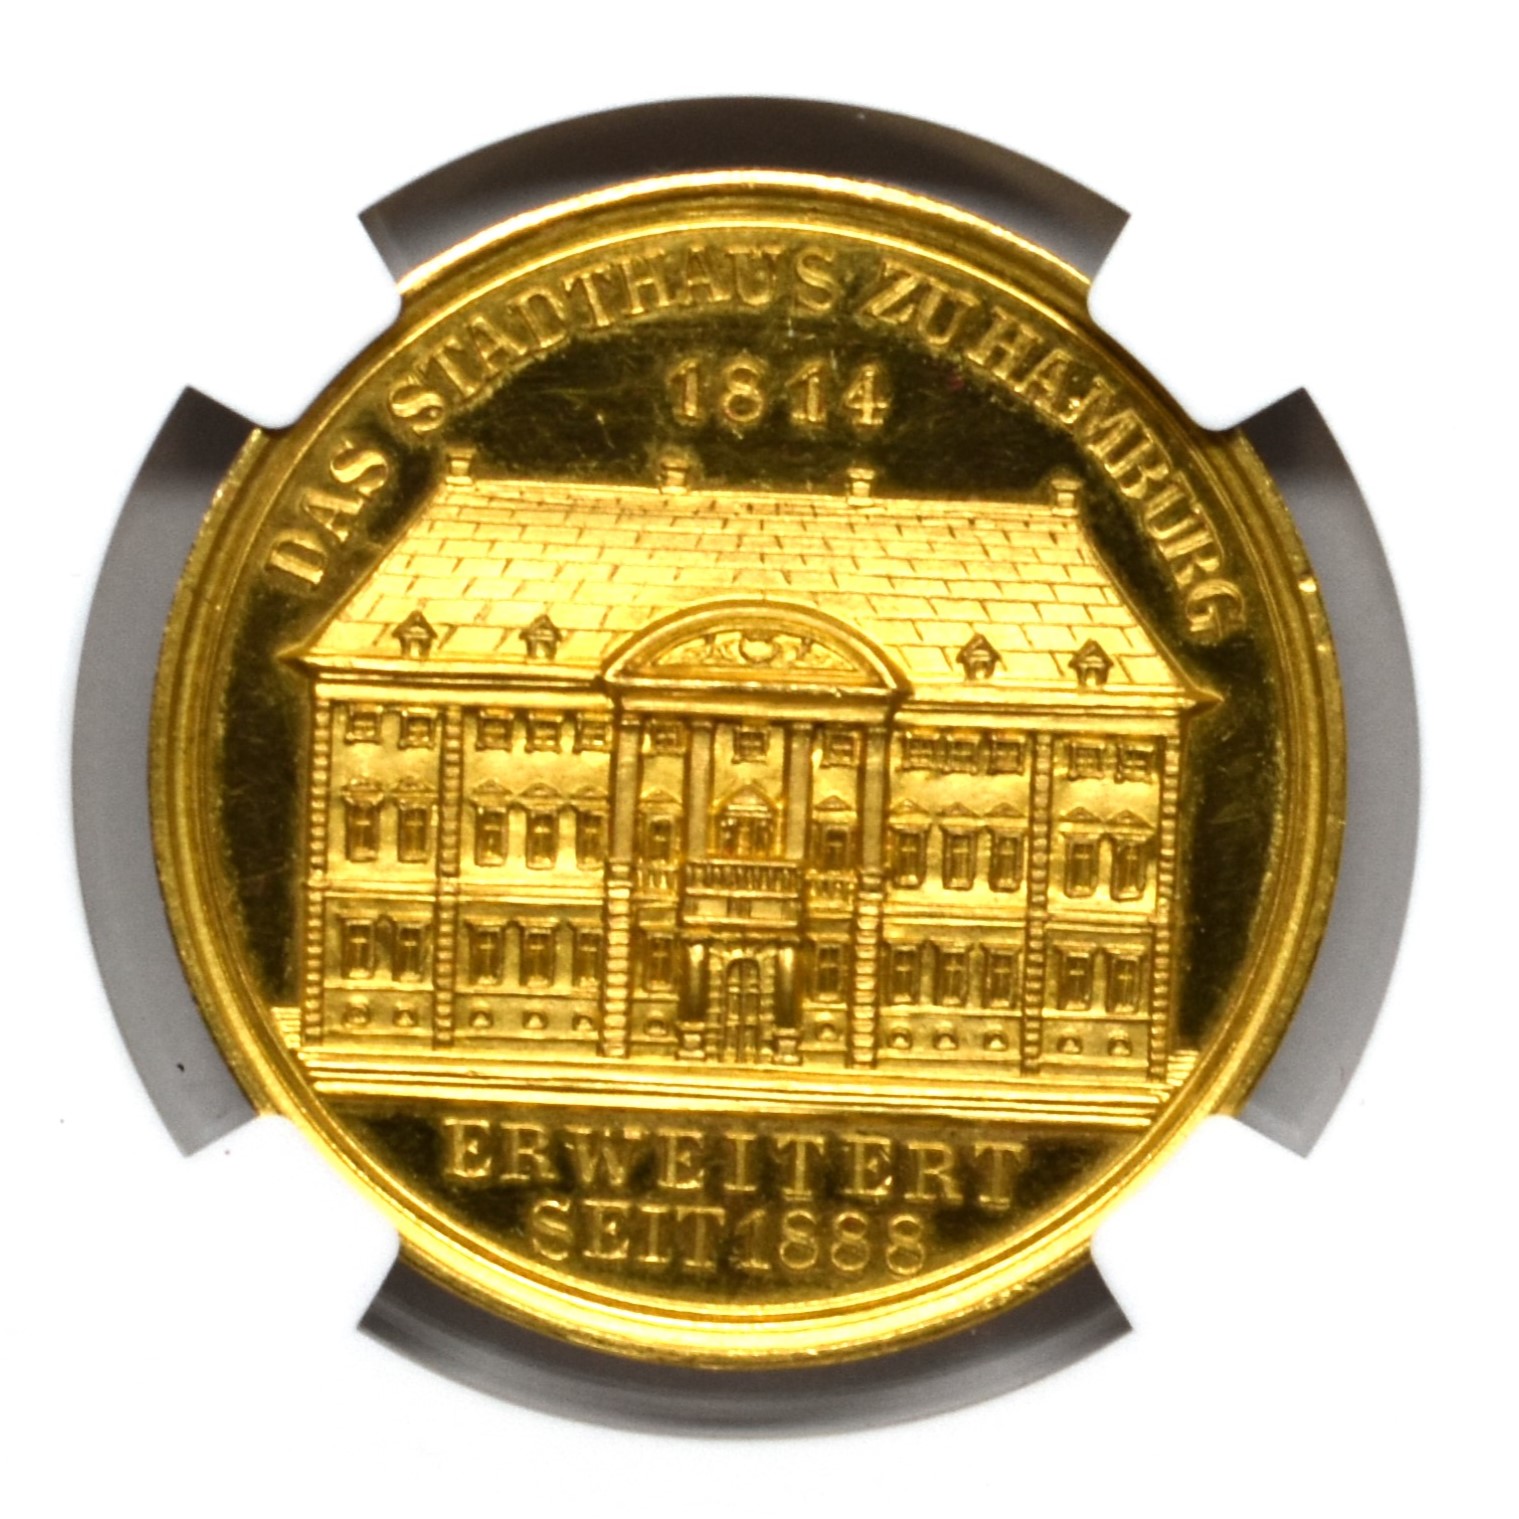 Sold】1888年 ハンブルク バンクポルトガレッサー 5ダカット金メダル 